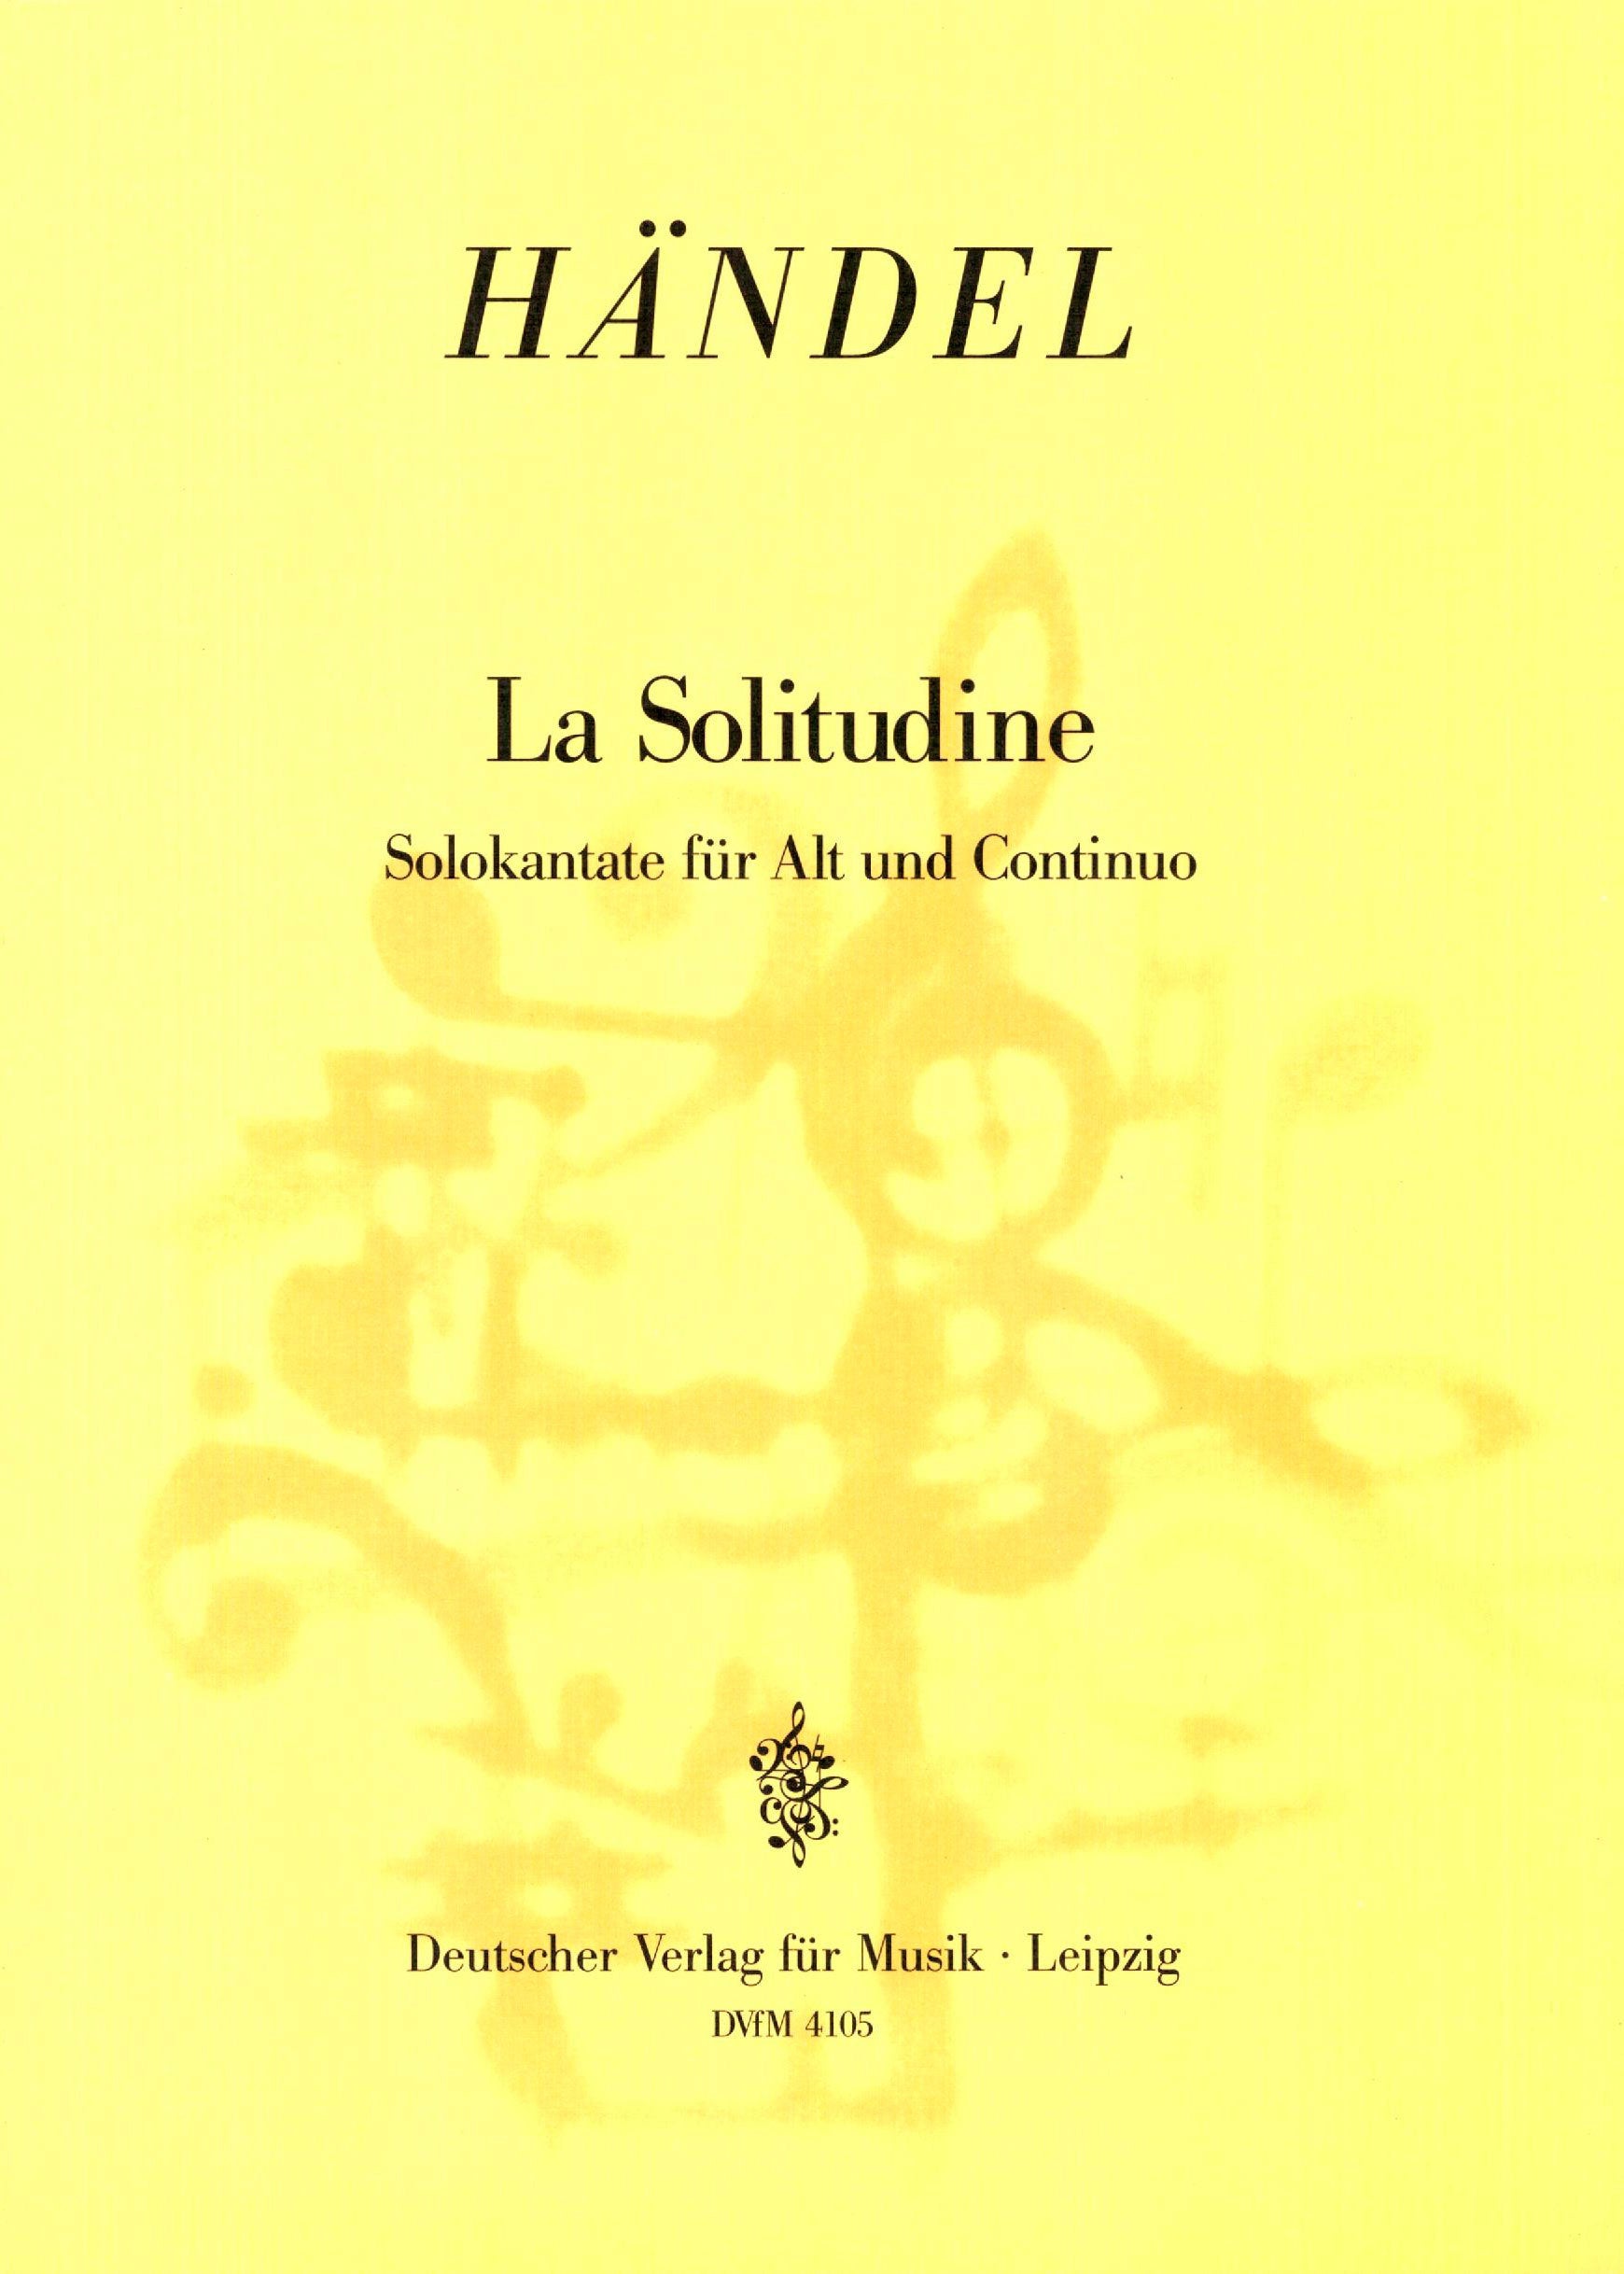 Handel: La Solitudine, HWV 121